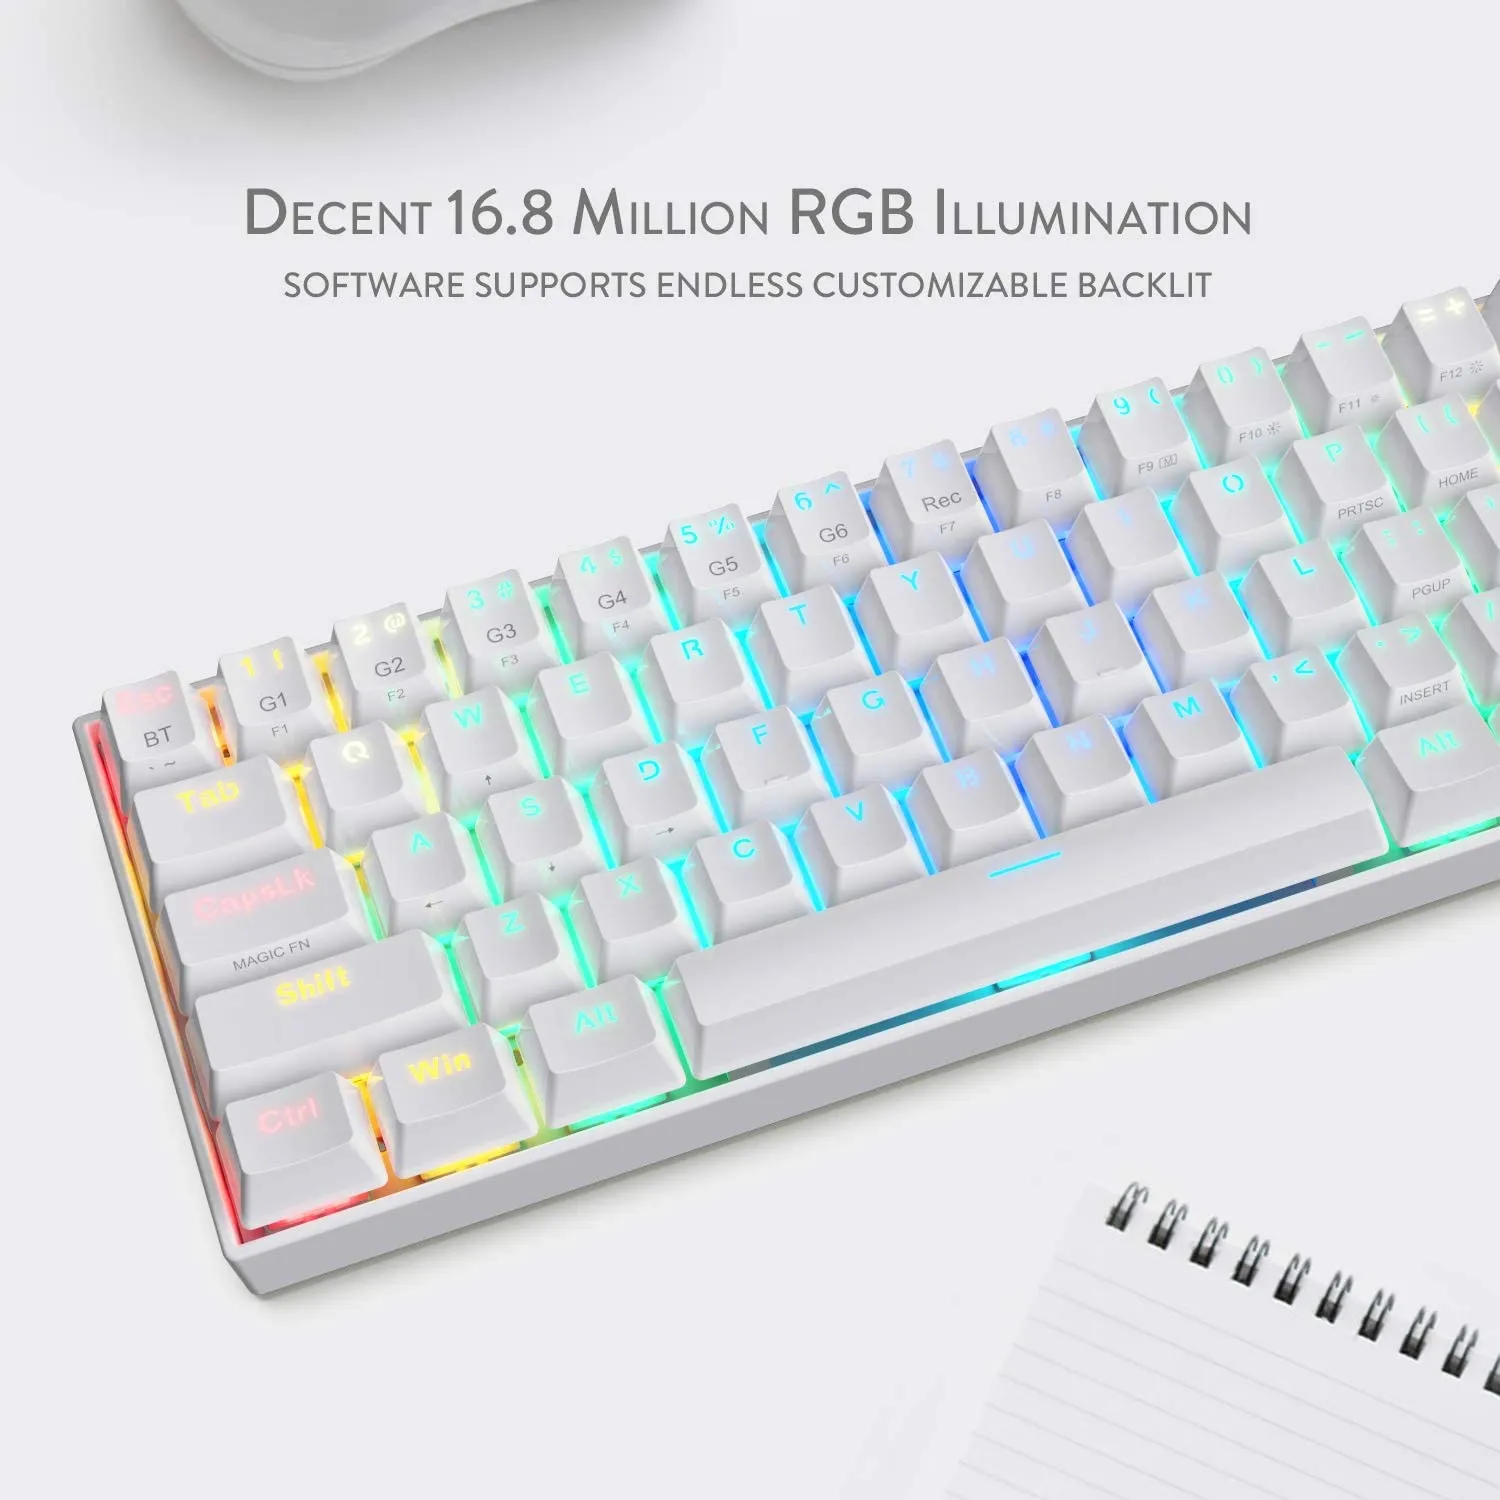 Mini 60% Clavier de Jeu, Câblé USB Gaming Keyboard, Configuration Compact  62 Touches, Ultra-Light Portable,QWERTY, Rétroéclairé RGB Clavier